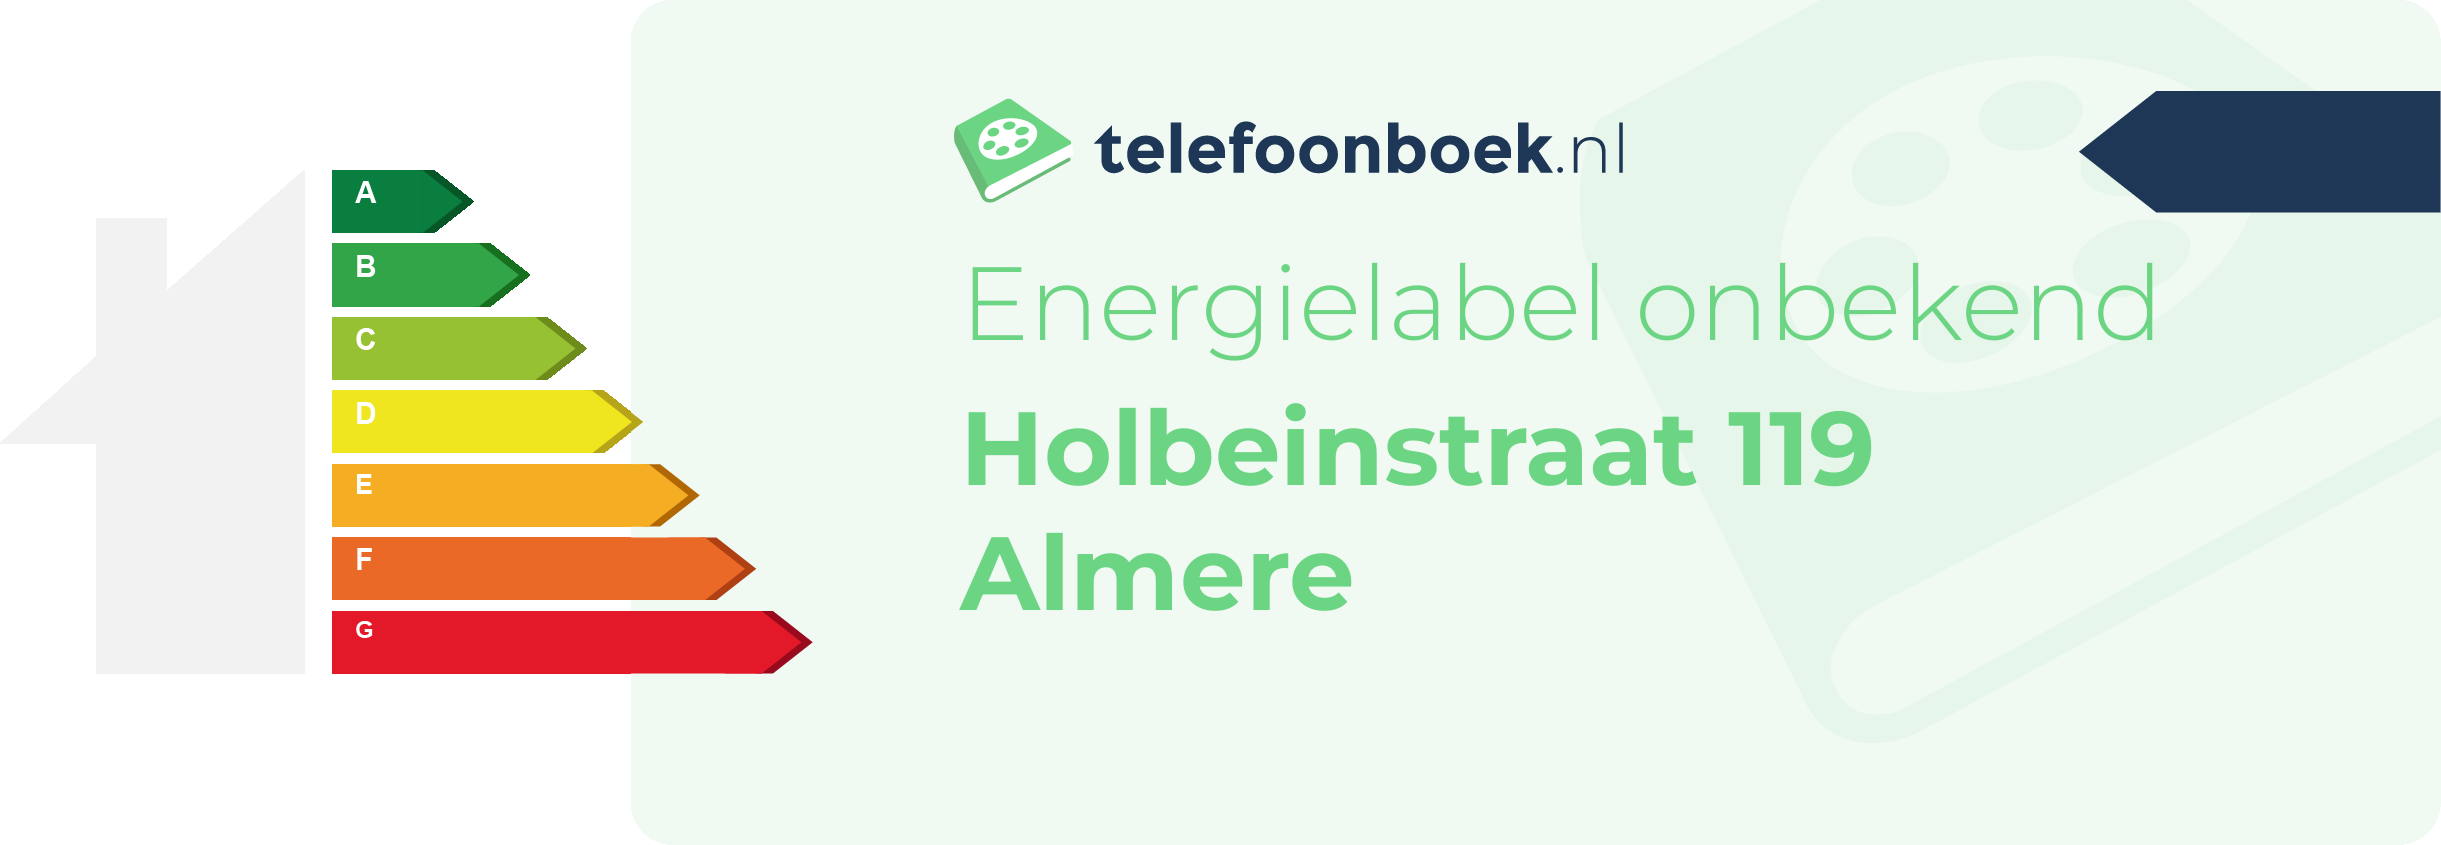 Energielabel Holbeinstraat 119 Almere